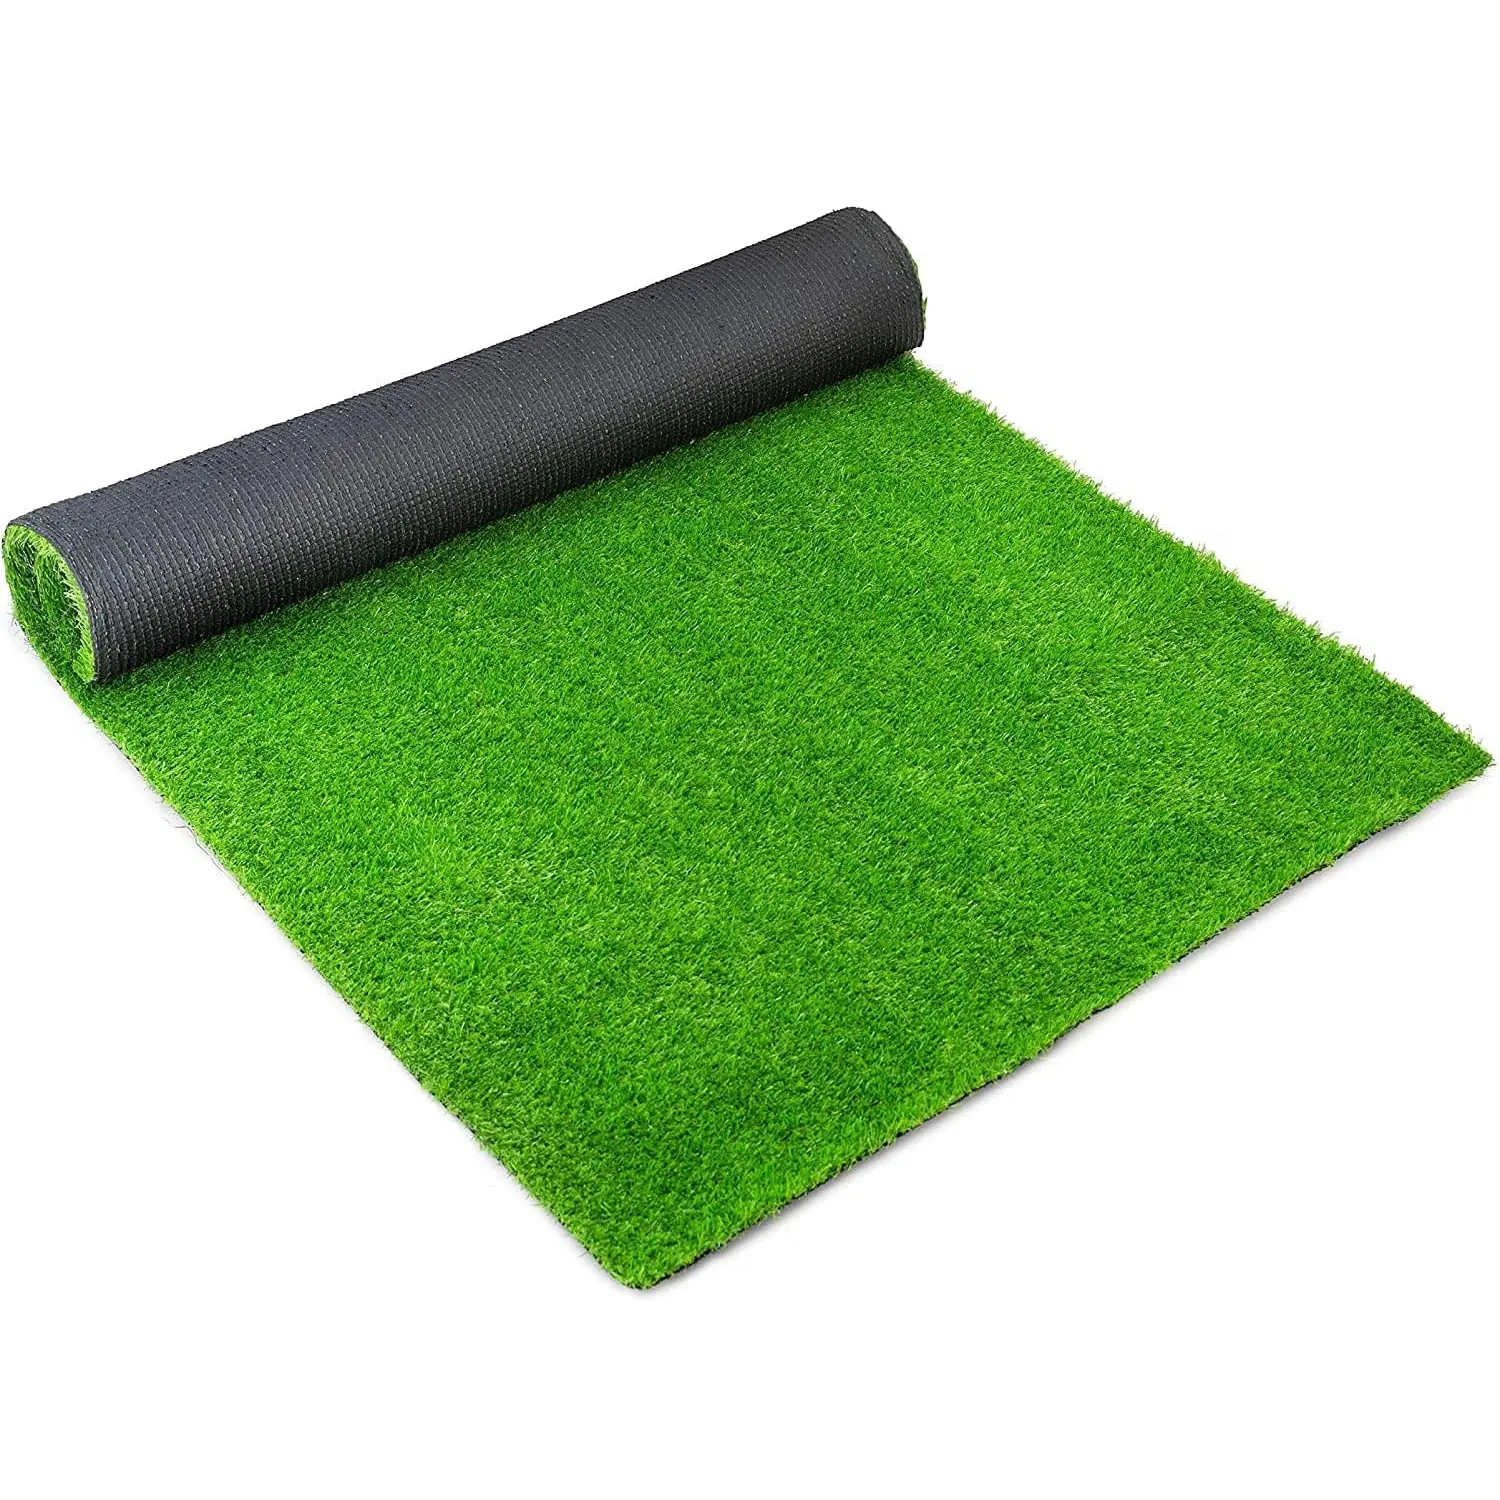 GM 실내 야외 현실적인 인공 잔디 잔디 풍경 합성 잔디 매트, 두꺼운 가짜 가짜 잔디 깔개